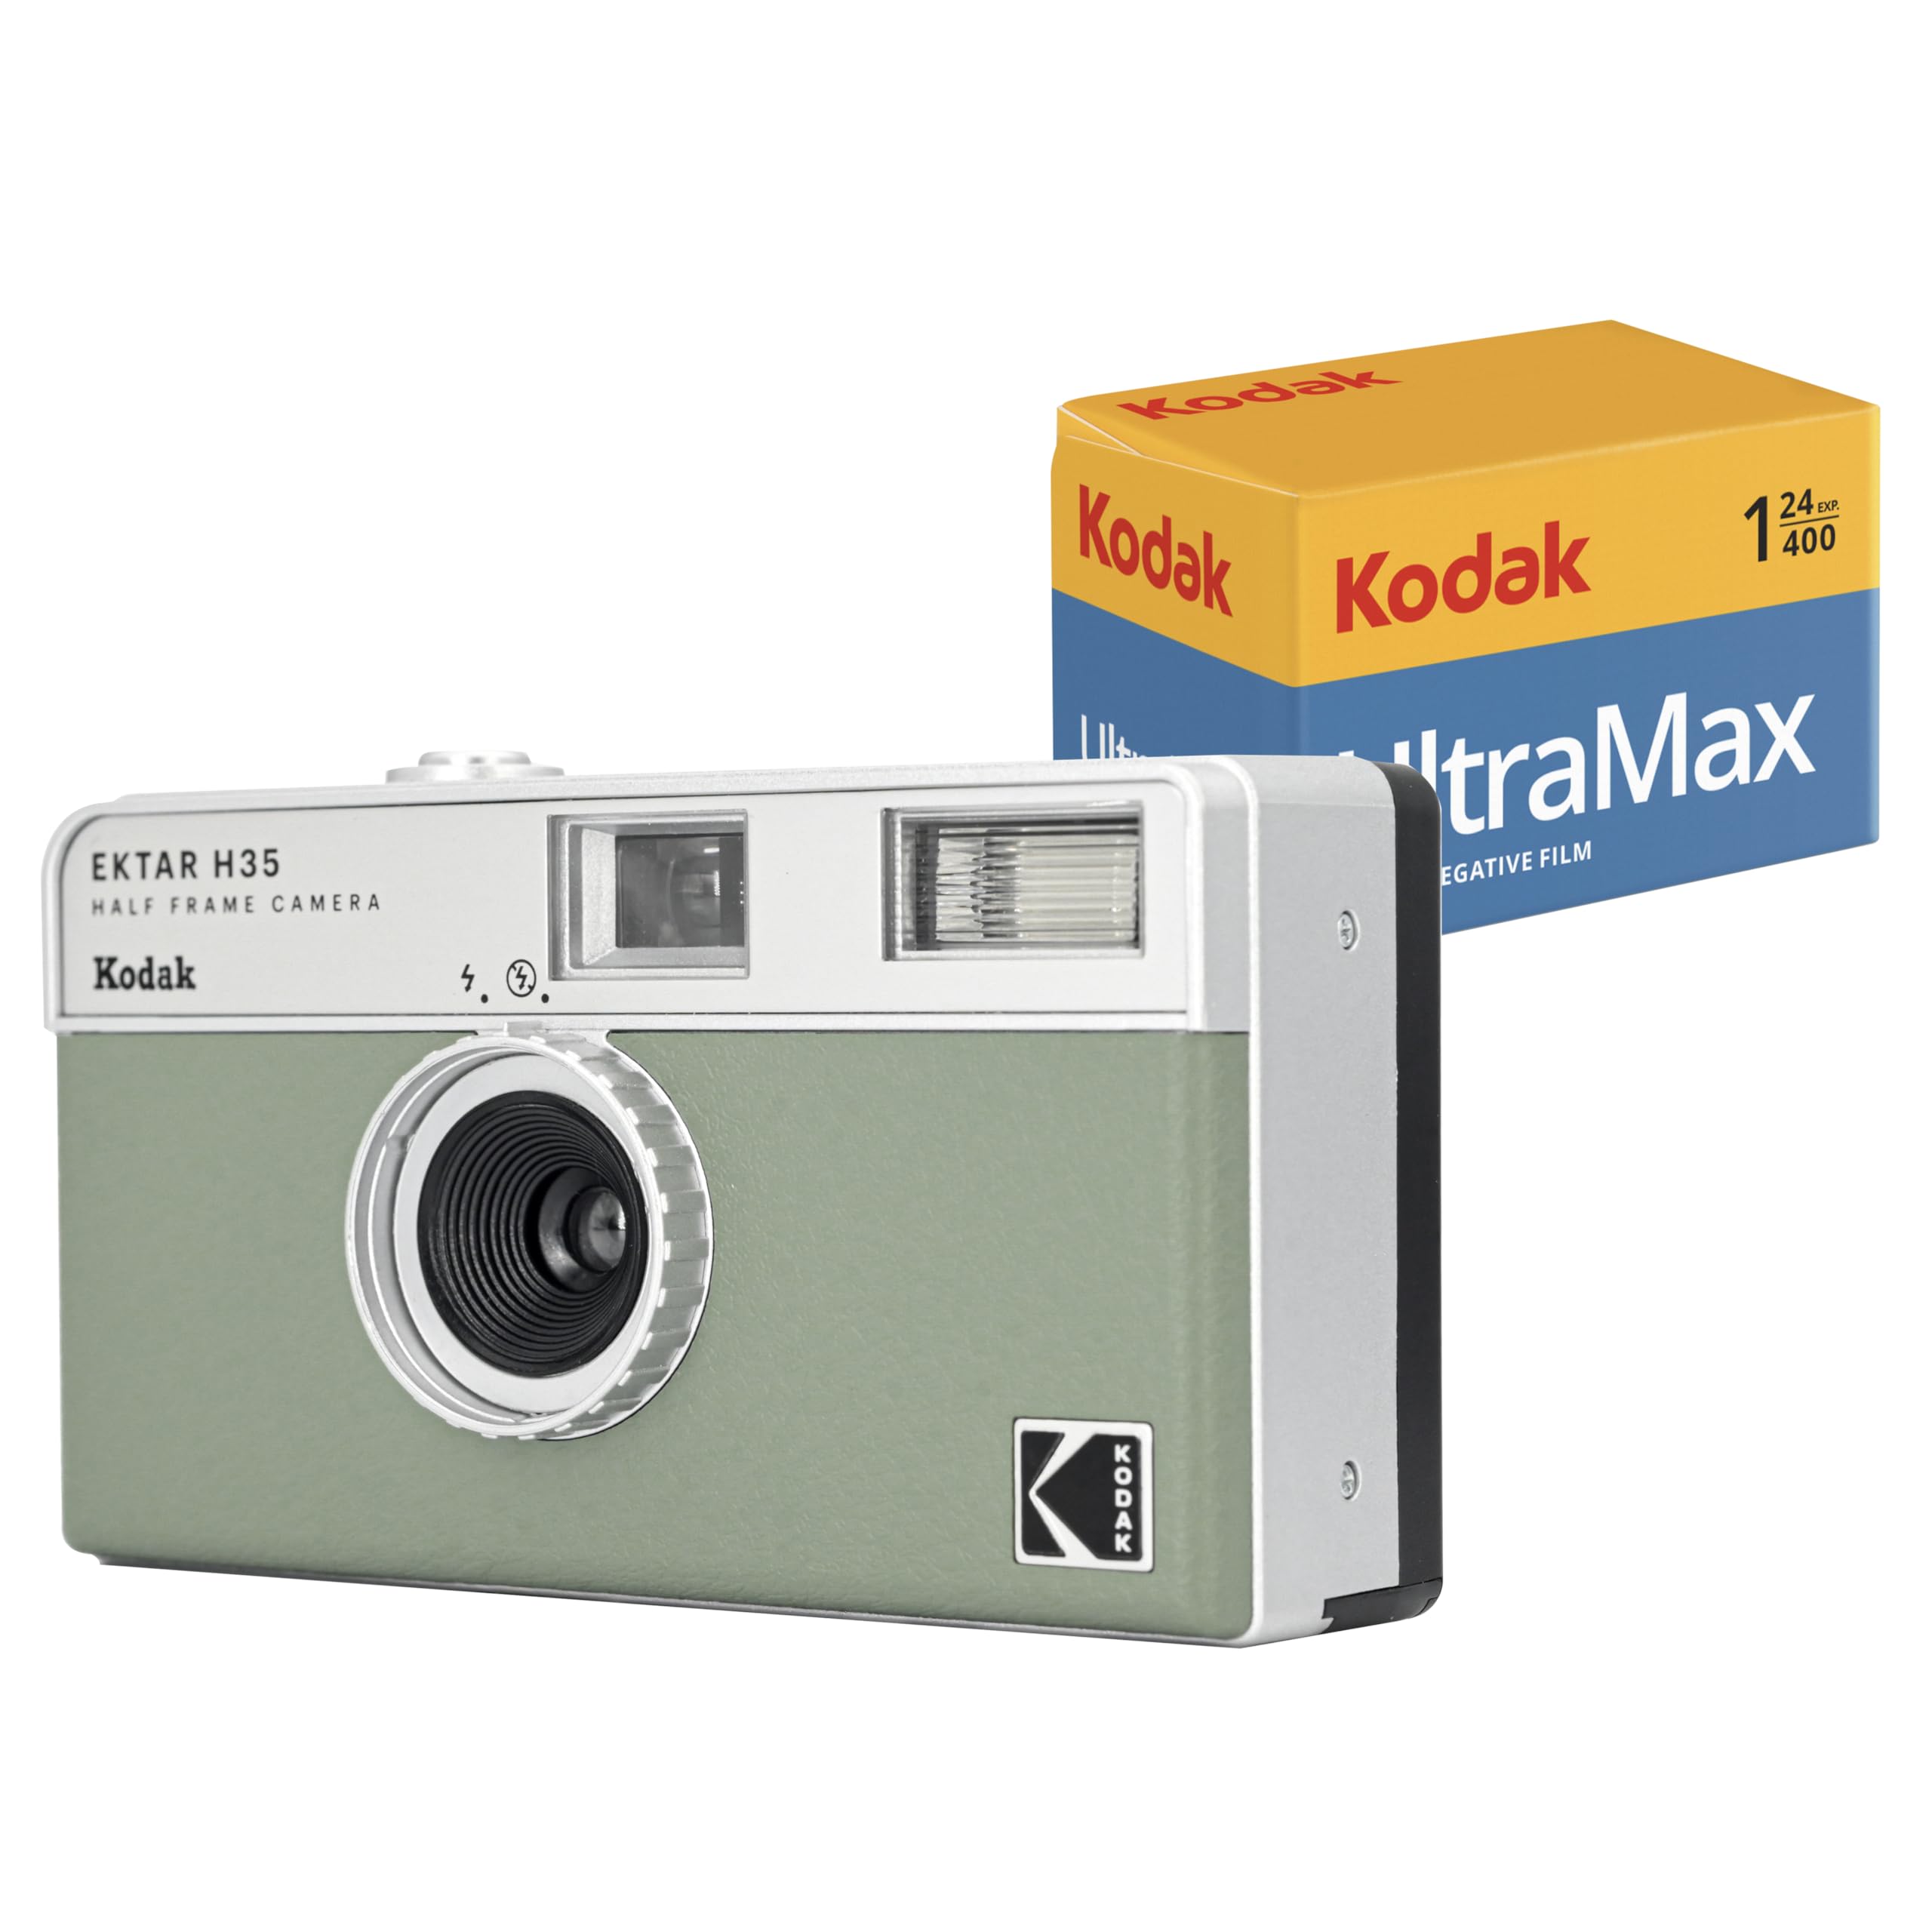 コダック(Kodak) 【国内正規品】 EKTAR H35 ハーフフレーム フィルム カメラ (セージ) Kodak Ultramax 400/24EXP 35mm ロール フィルム付きバンドル